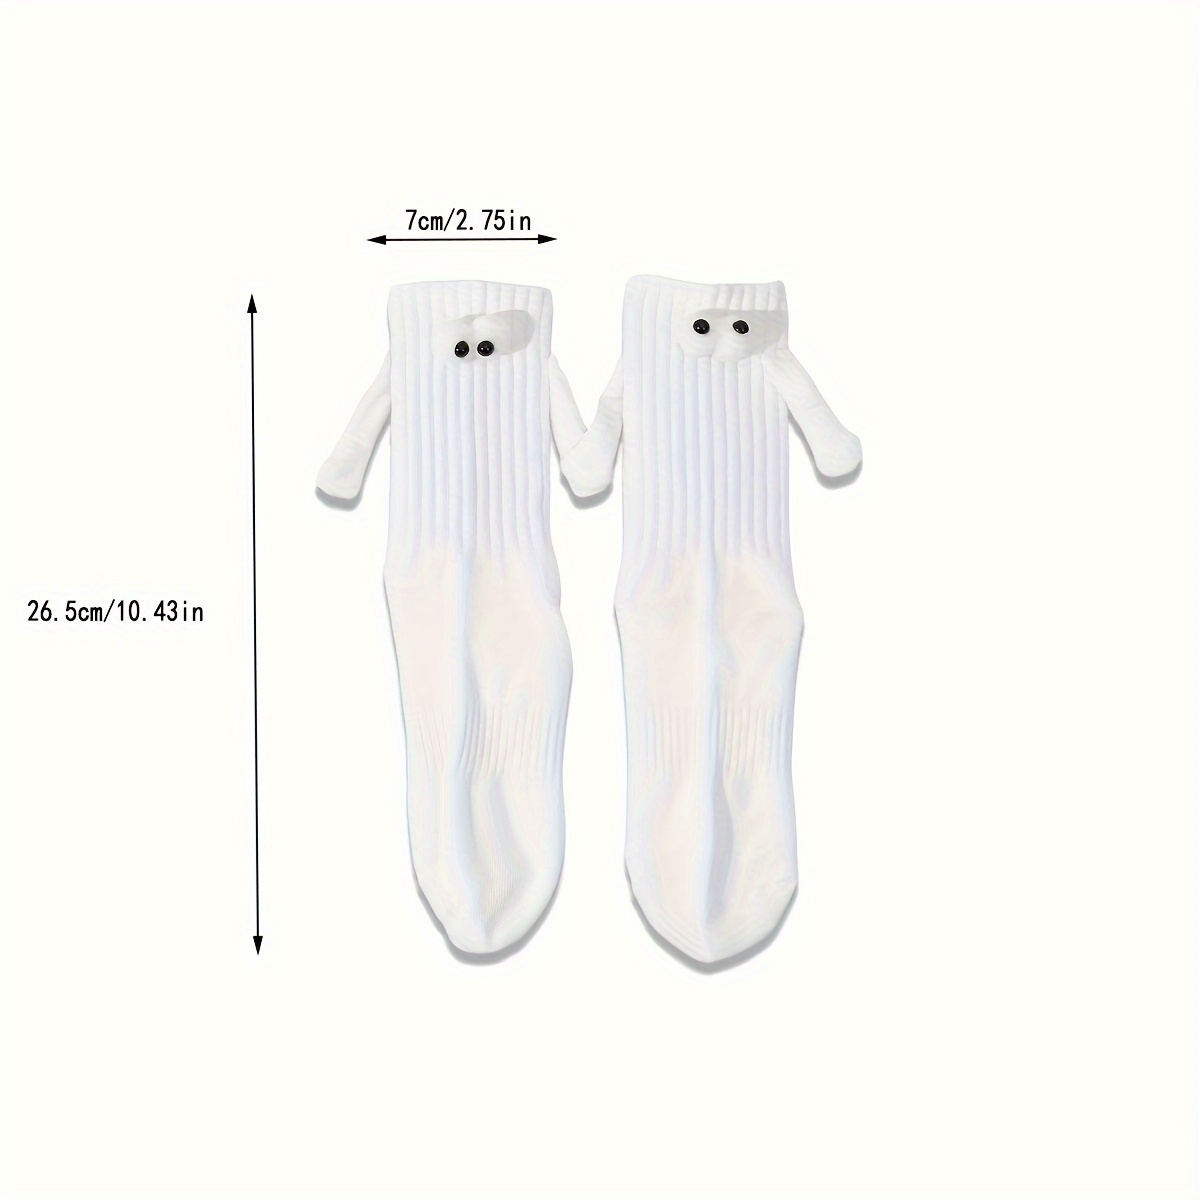 2 pares de calcetines tomados de la mano, calcetines magnéticos para  parejas, calcetines de tubo mediano, divertidos calcetines 3D novedosos